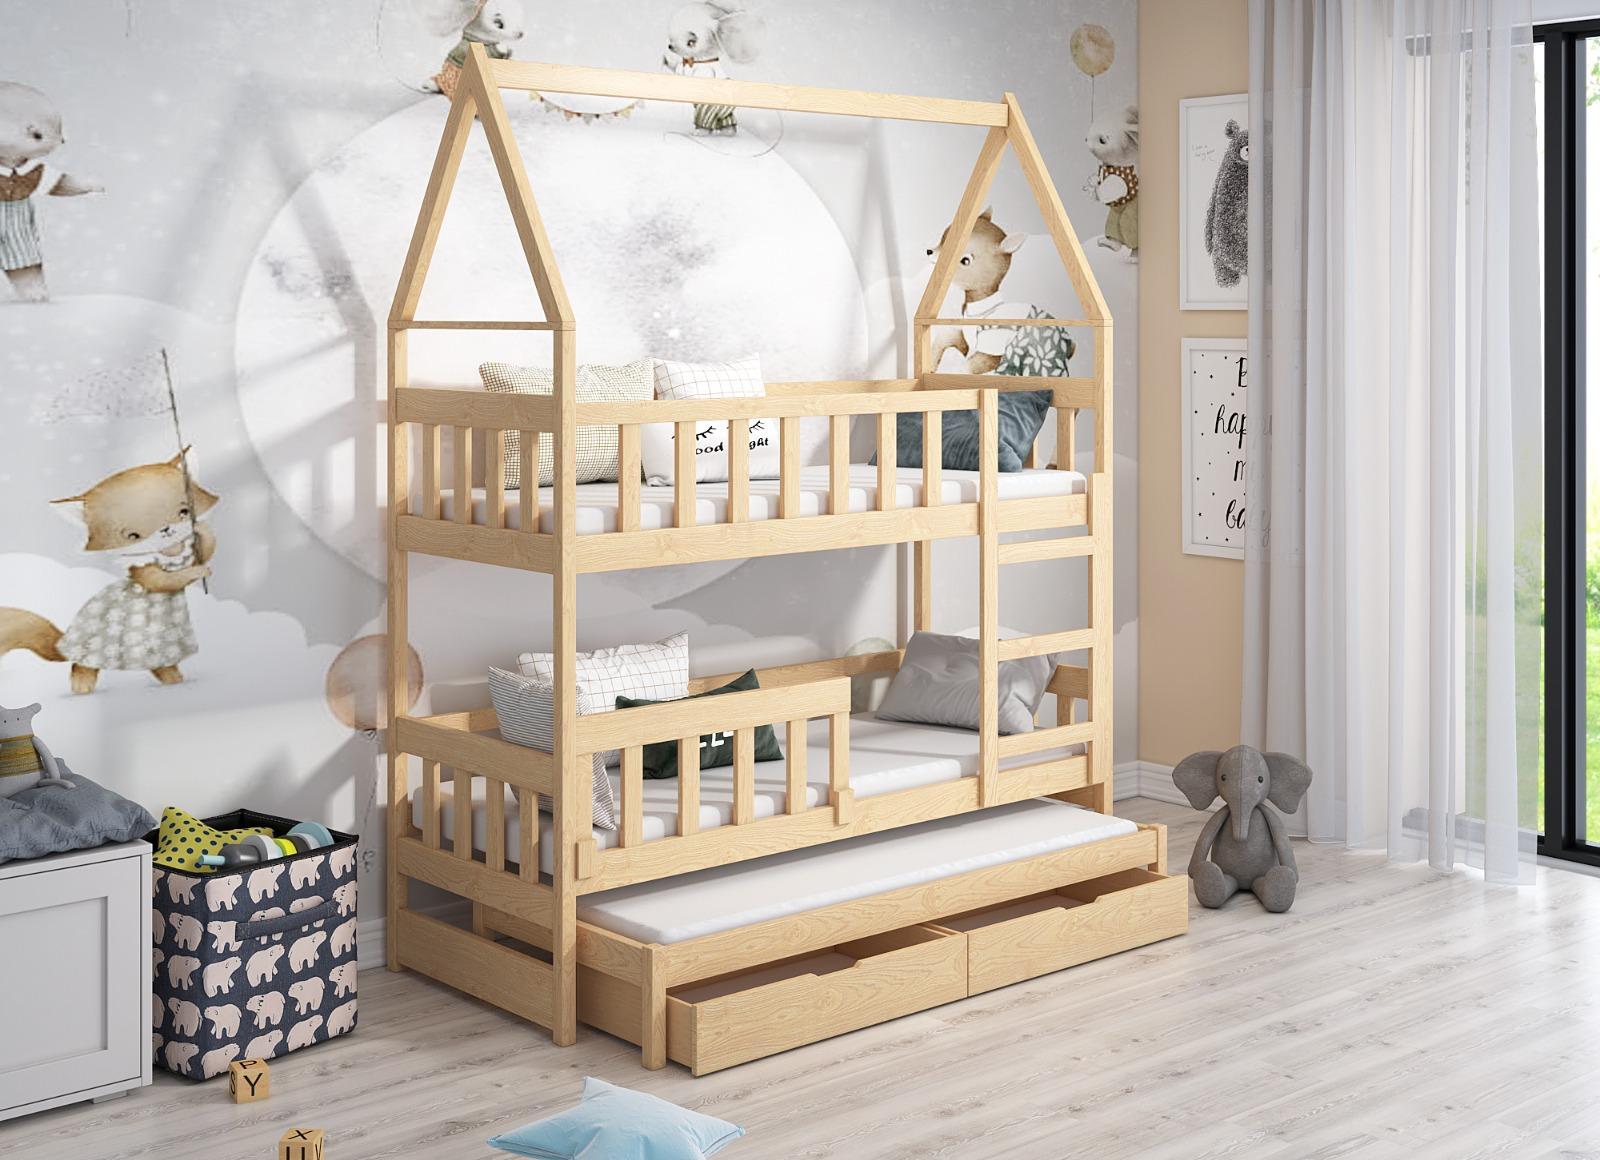 Łóżko piętrowe DOMEK drewno naturalne miejsce do spania dla 3 osób + materace piankowe 180x75 cm w zestawie do pokoju dziecka nr. 1